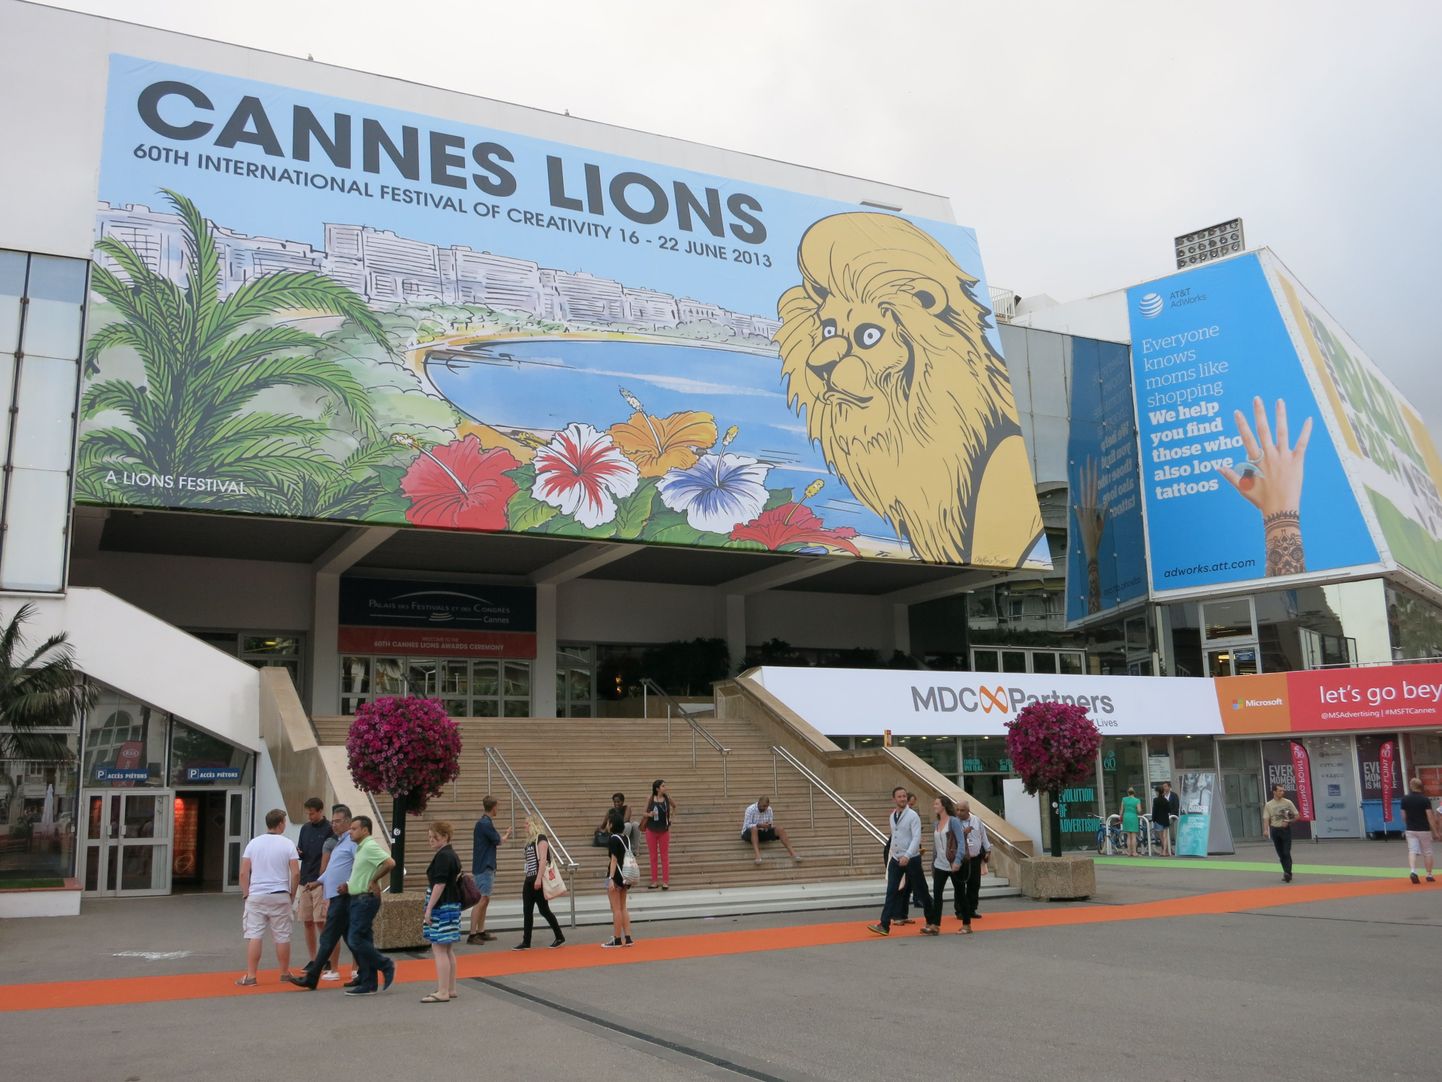 Cannes'i festivalipalee on sel nädalal loovusfestivali päralt.